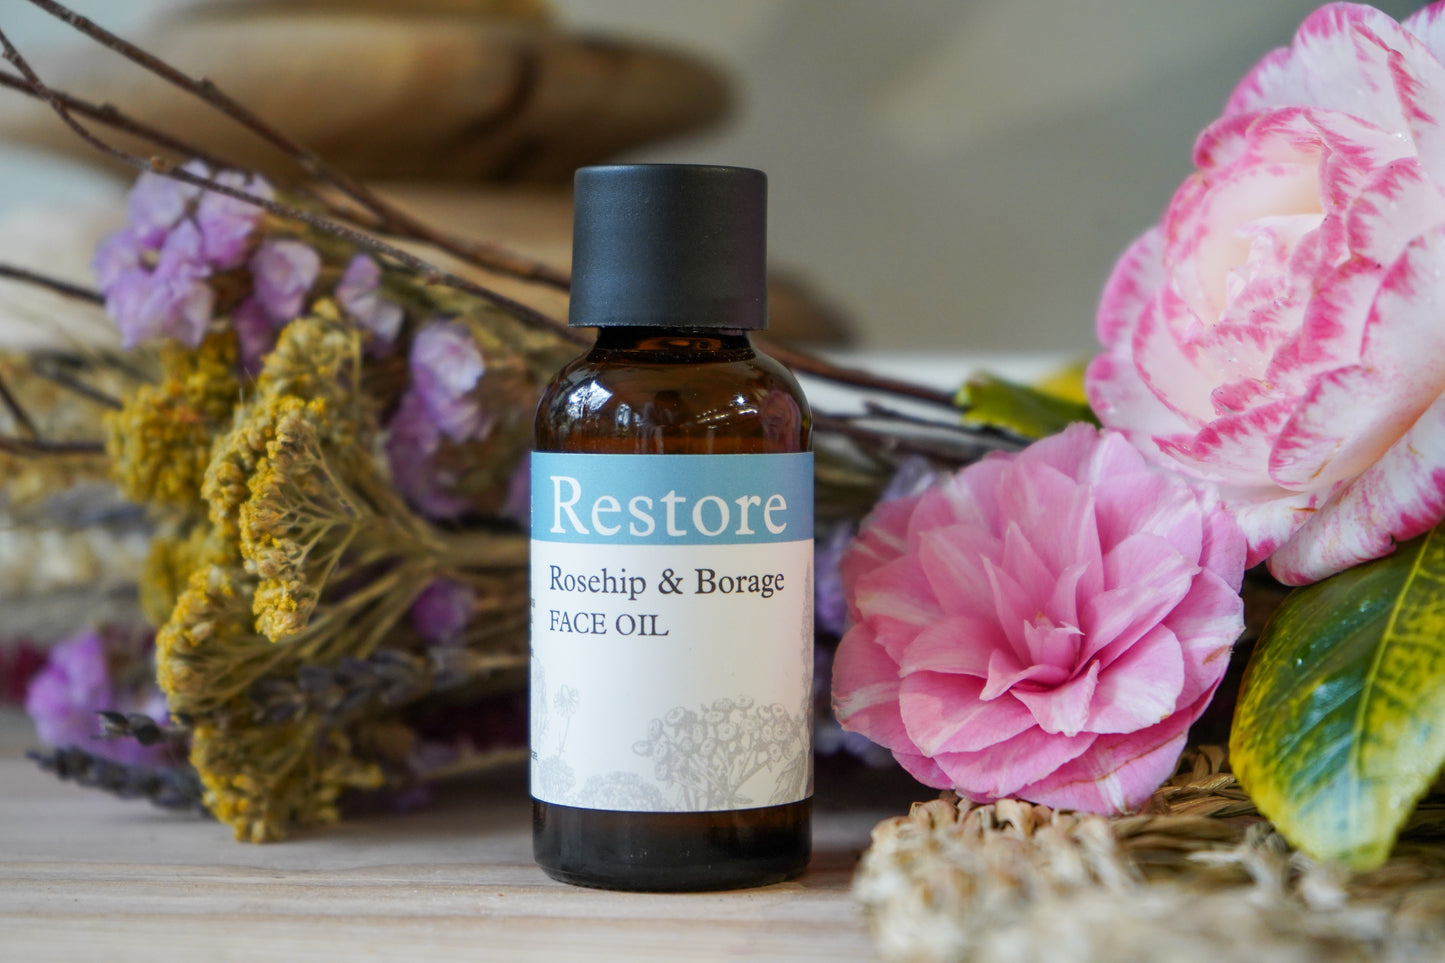 Restore: Rosehip & Borage Face Oil